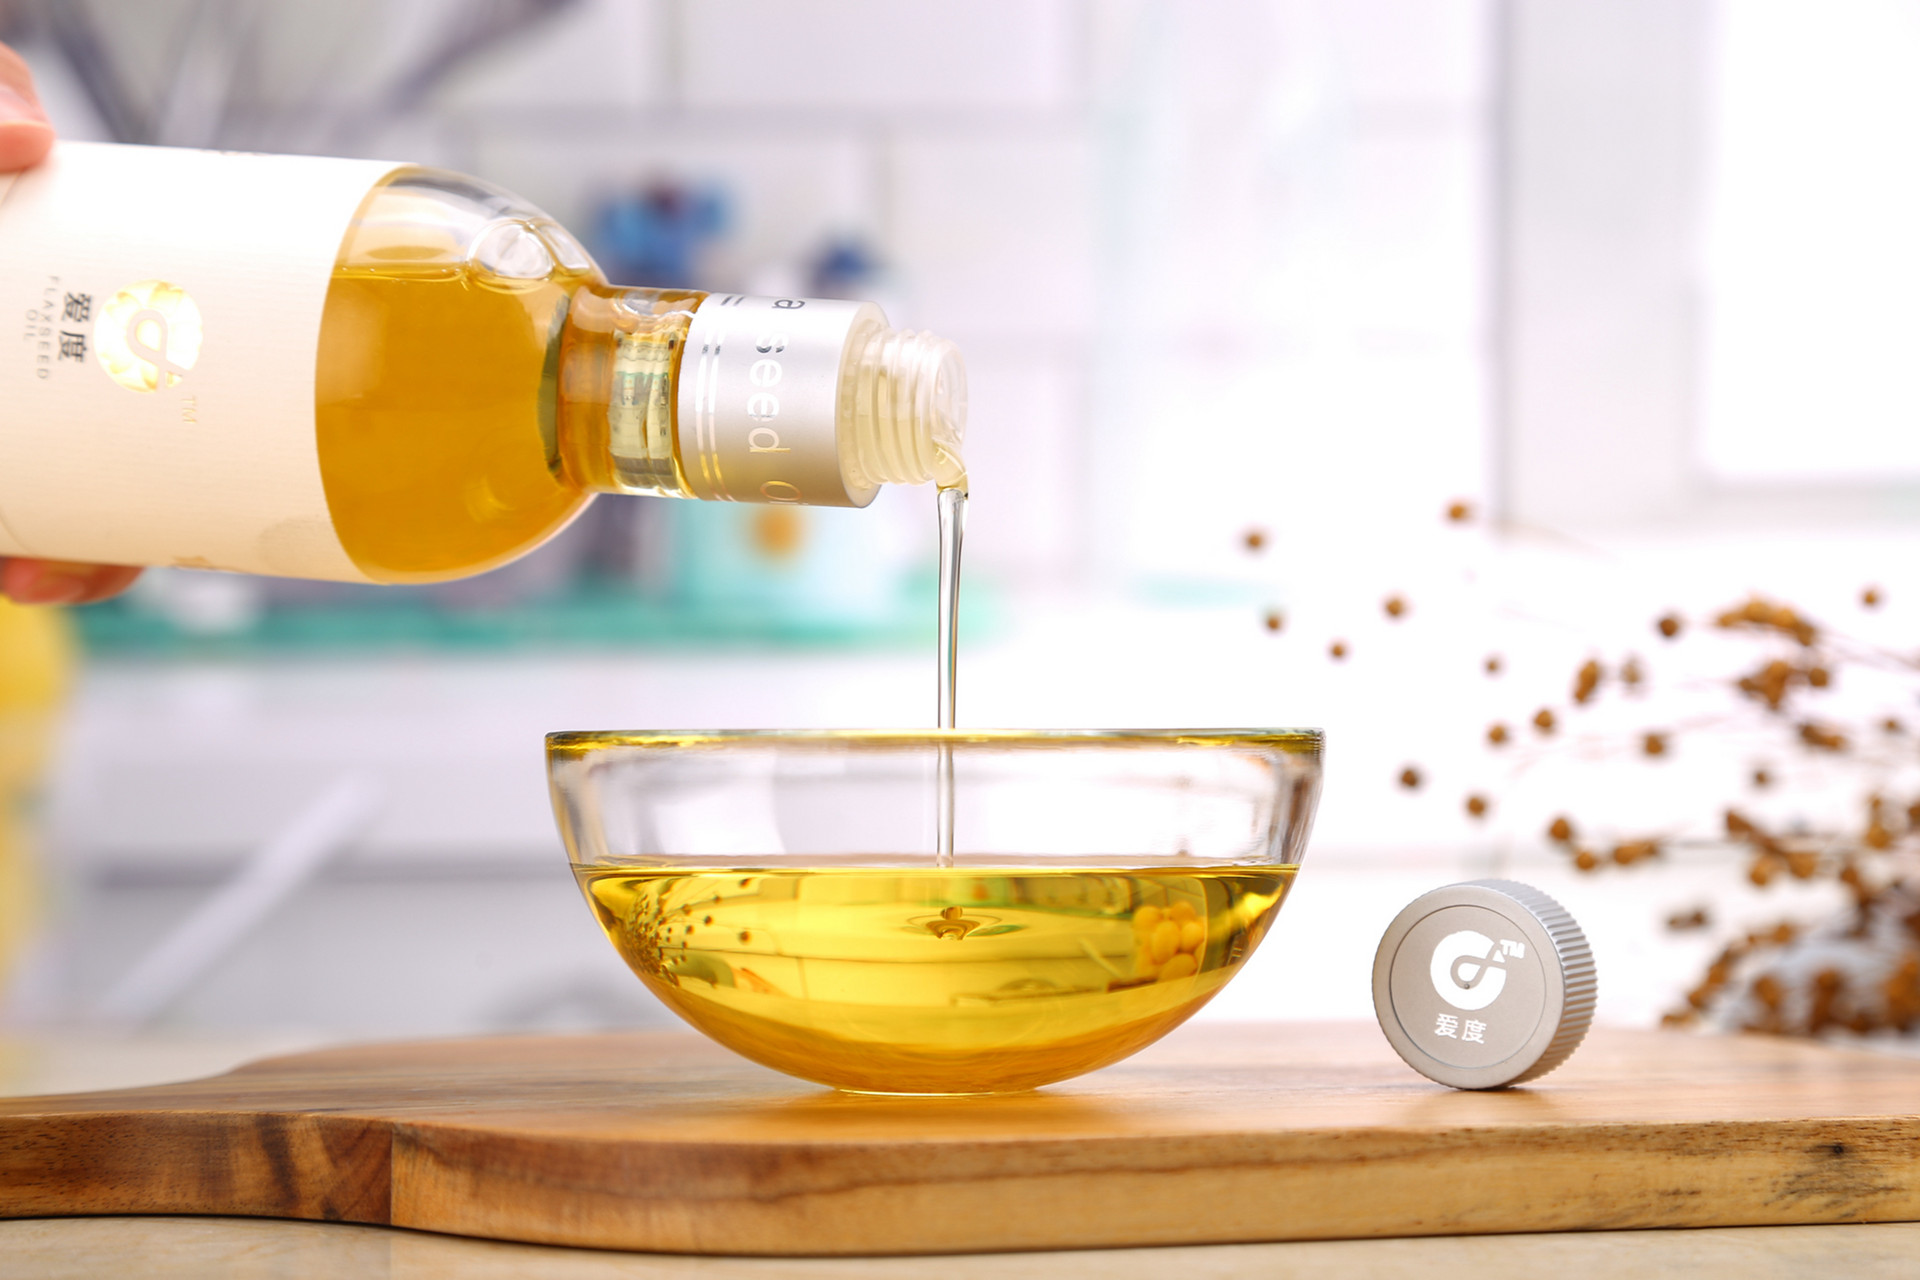 亚麻籽油的功效与作用及食用方法